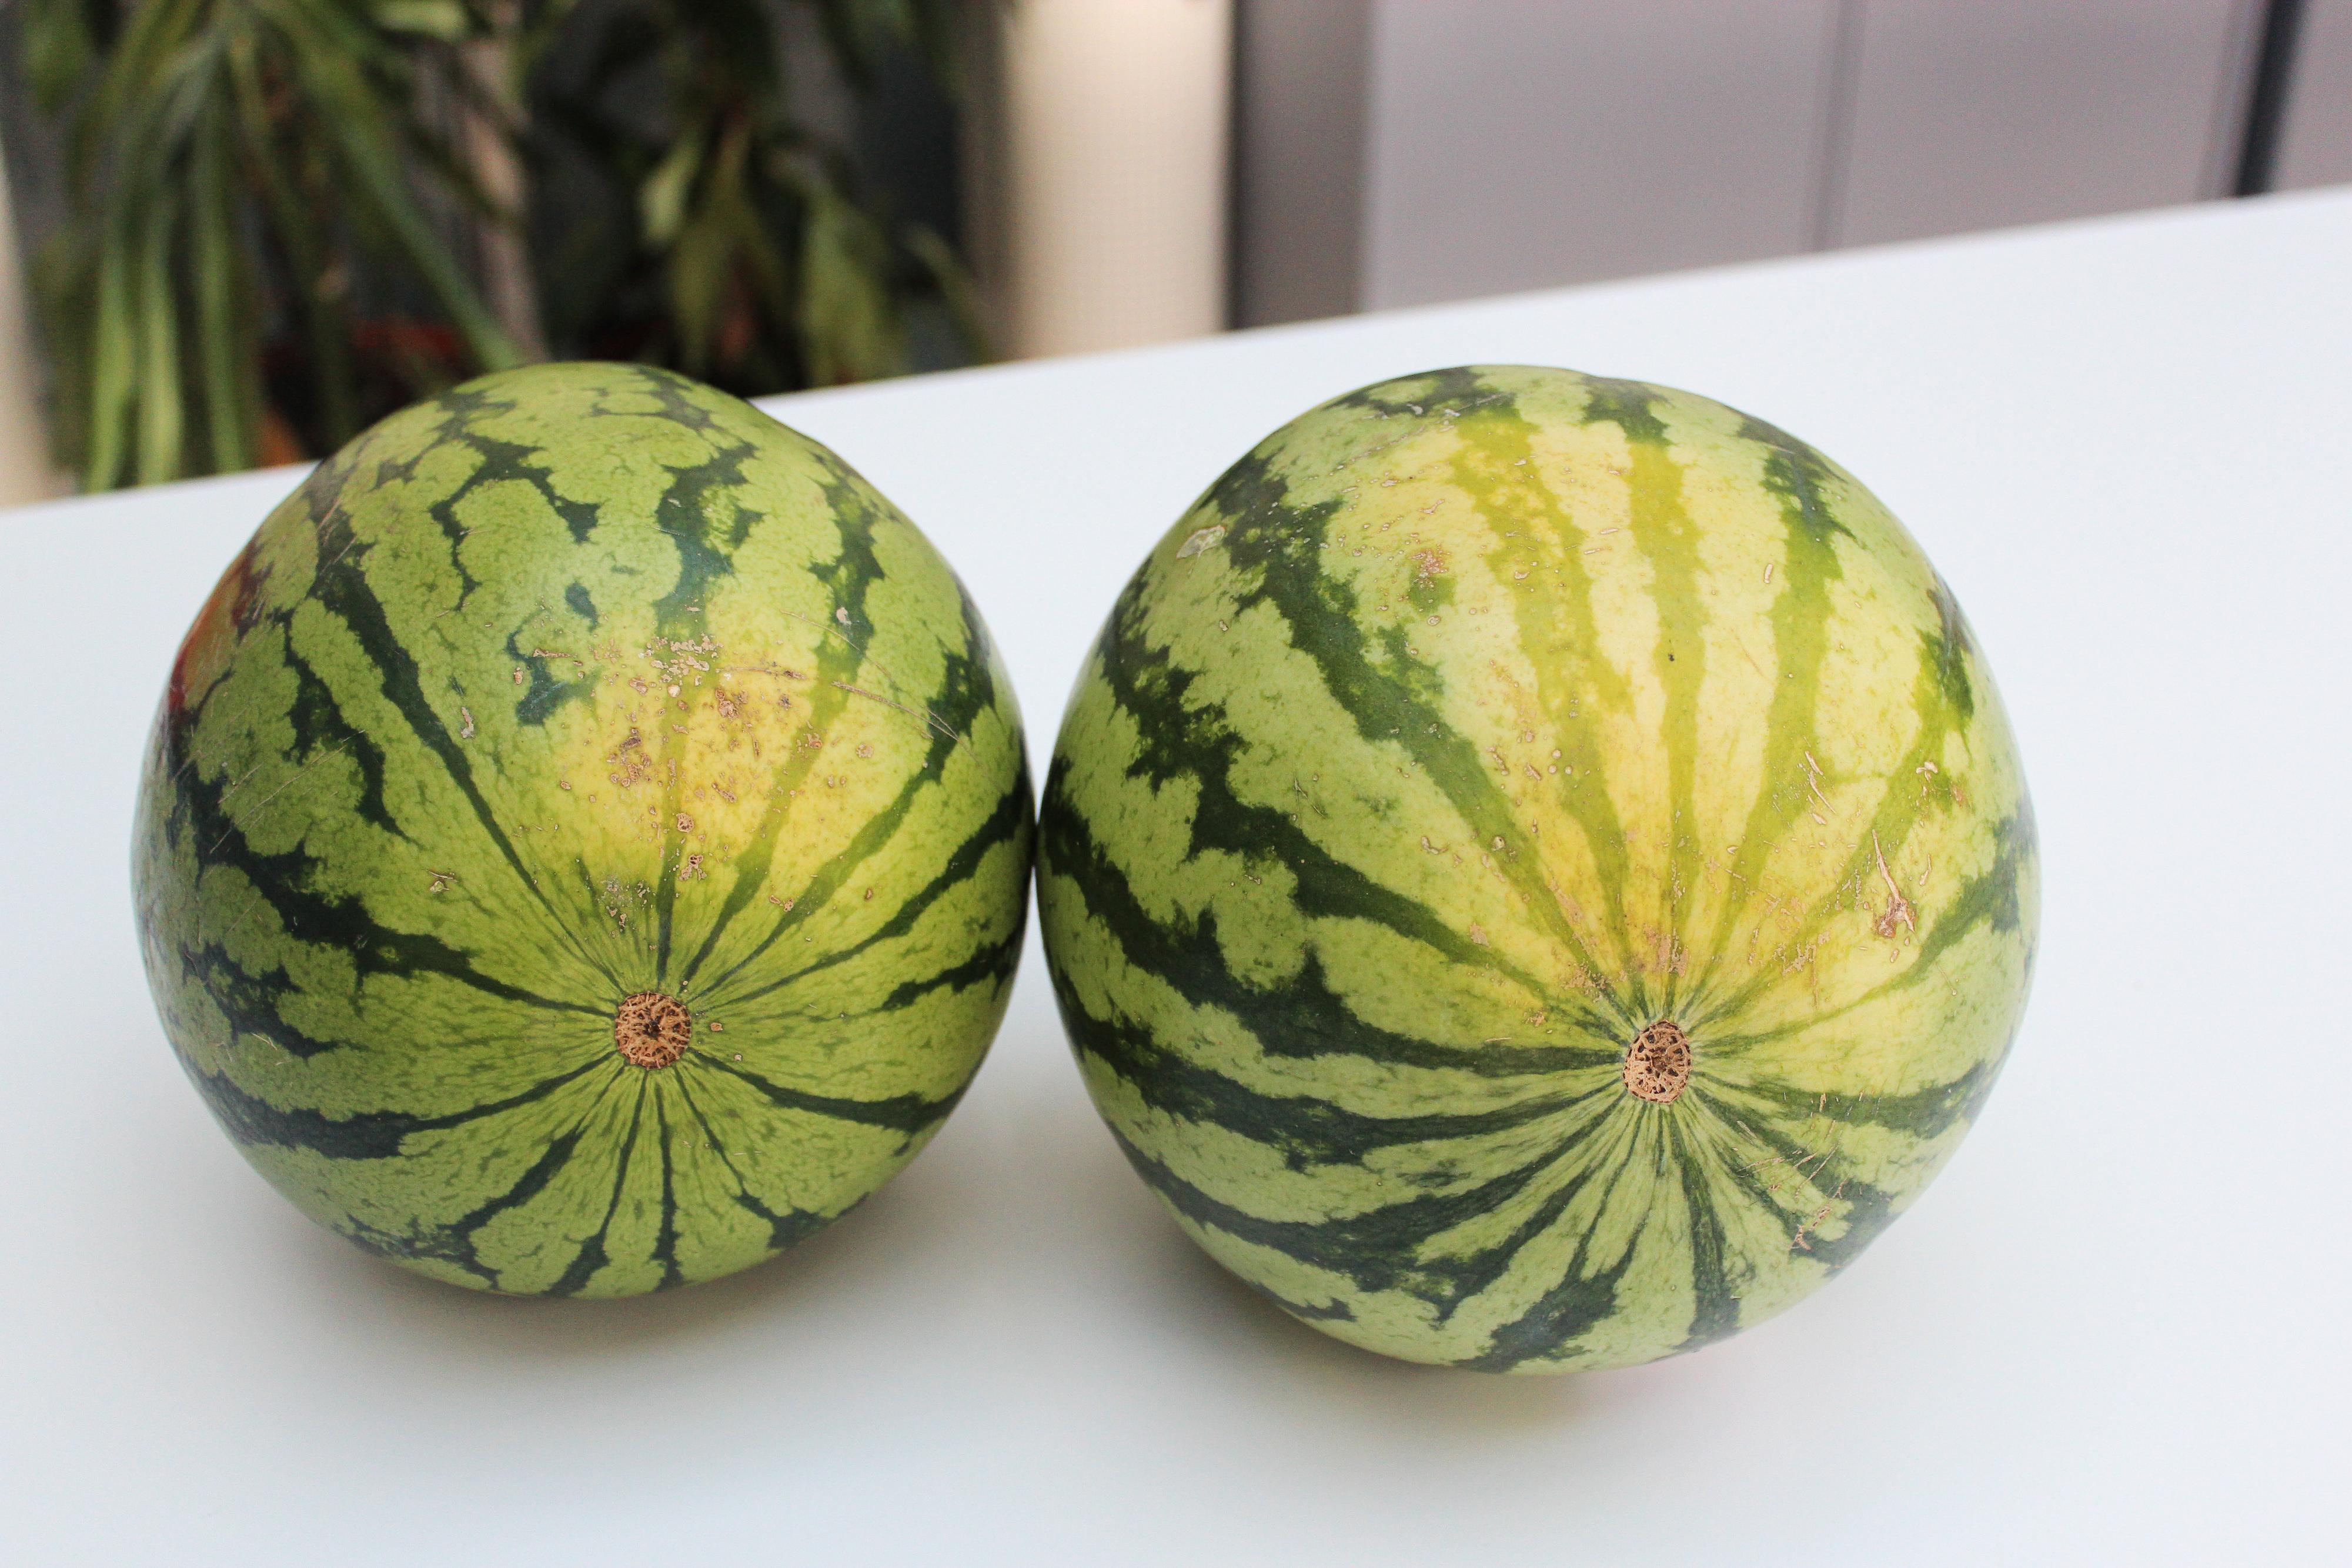 SOLMODEN: En vannmelon som har gule flekker og mørkegrønne striper har ofte en god smak. 